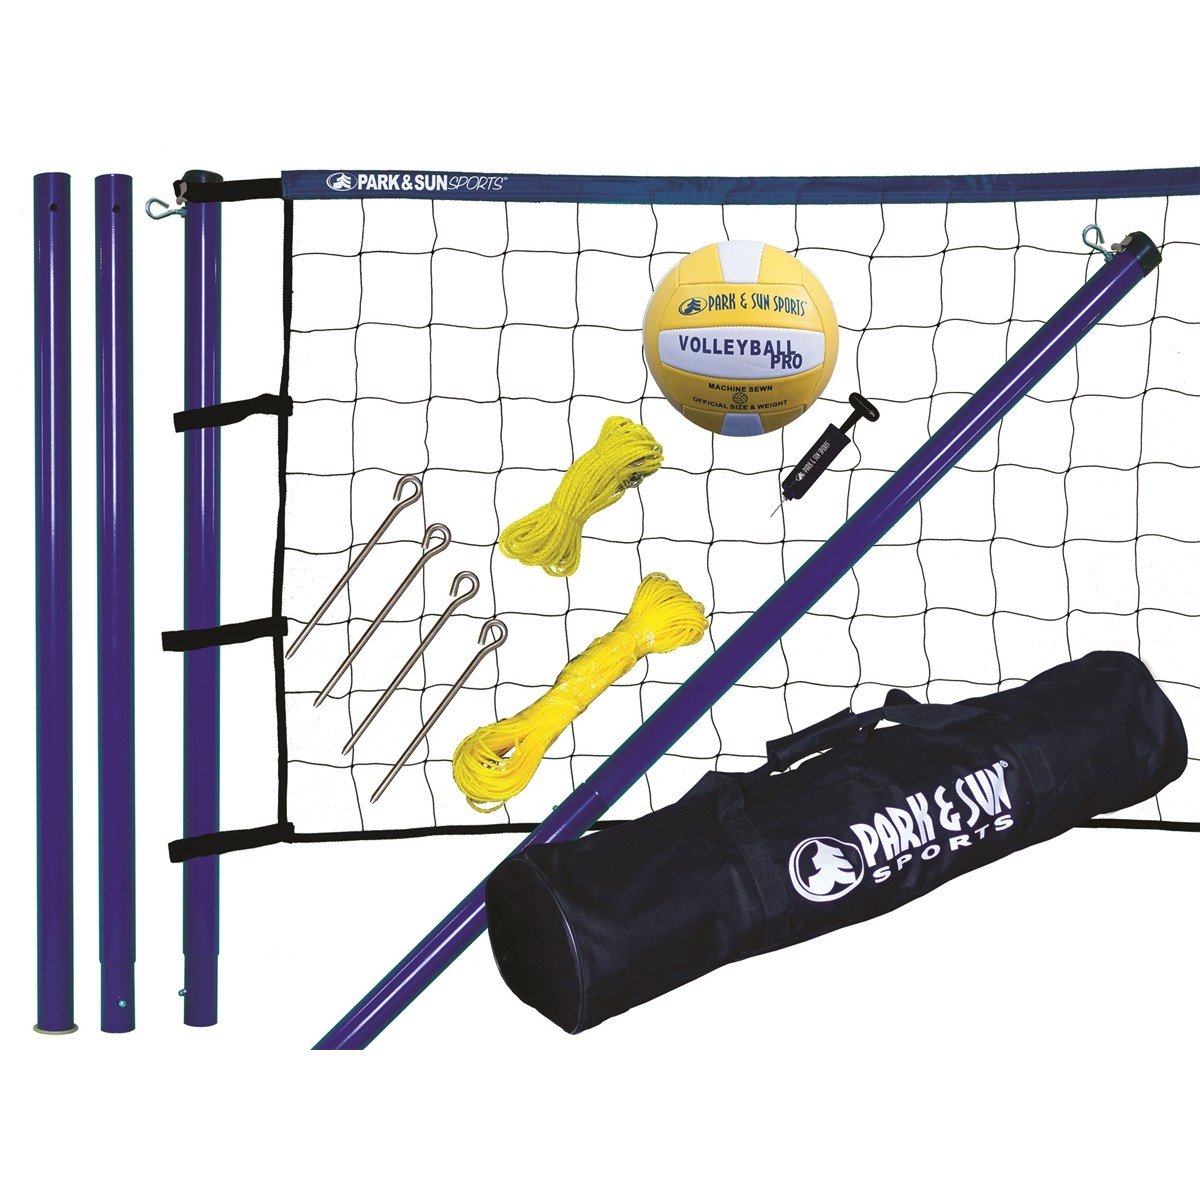 Спортивный инвентарь и оборудование для волейбола